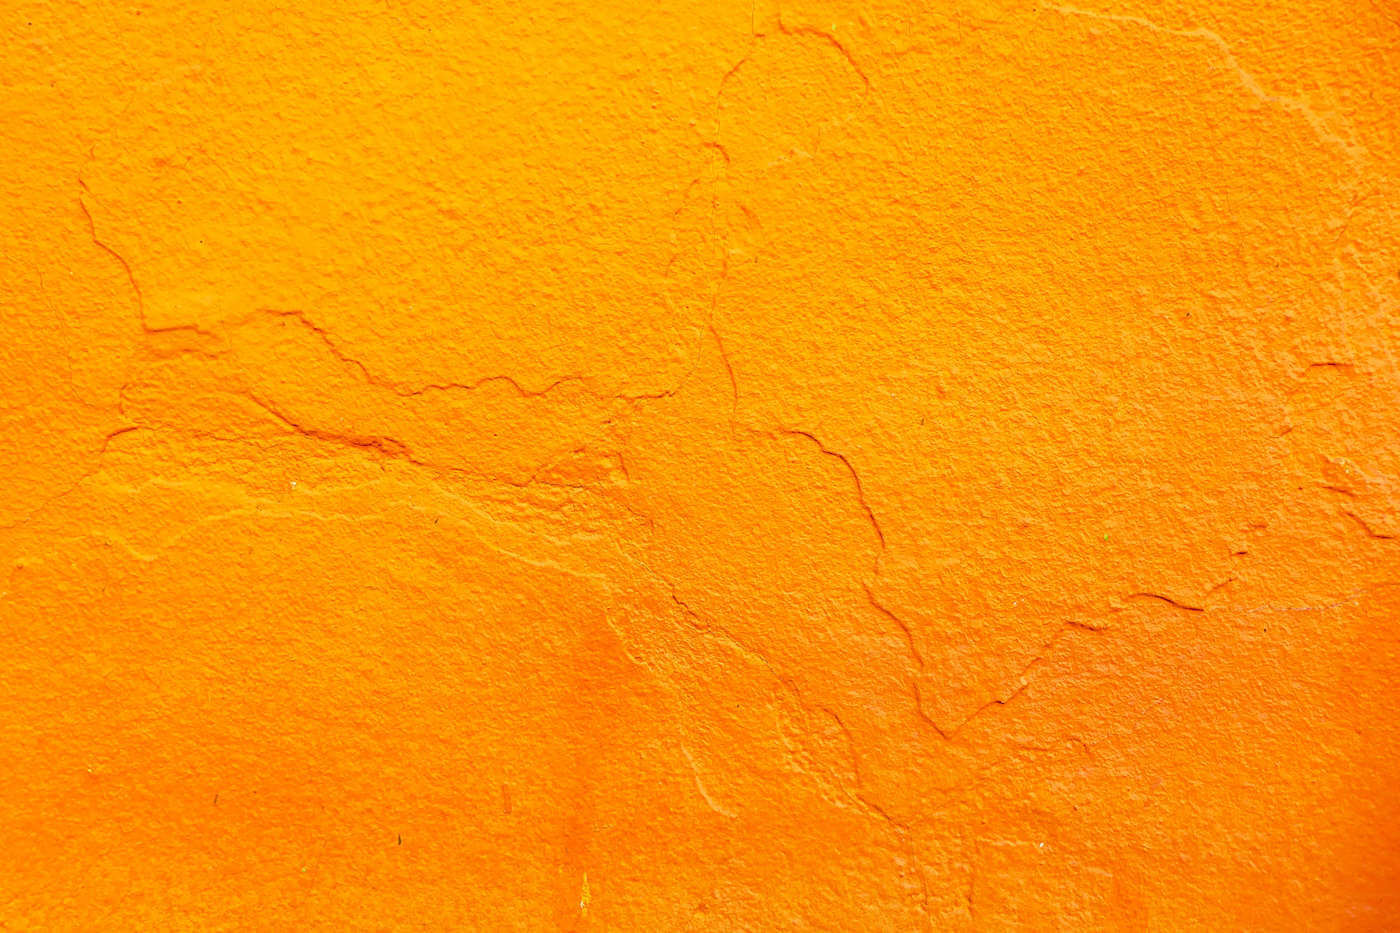 ORANGE - Orange color